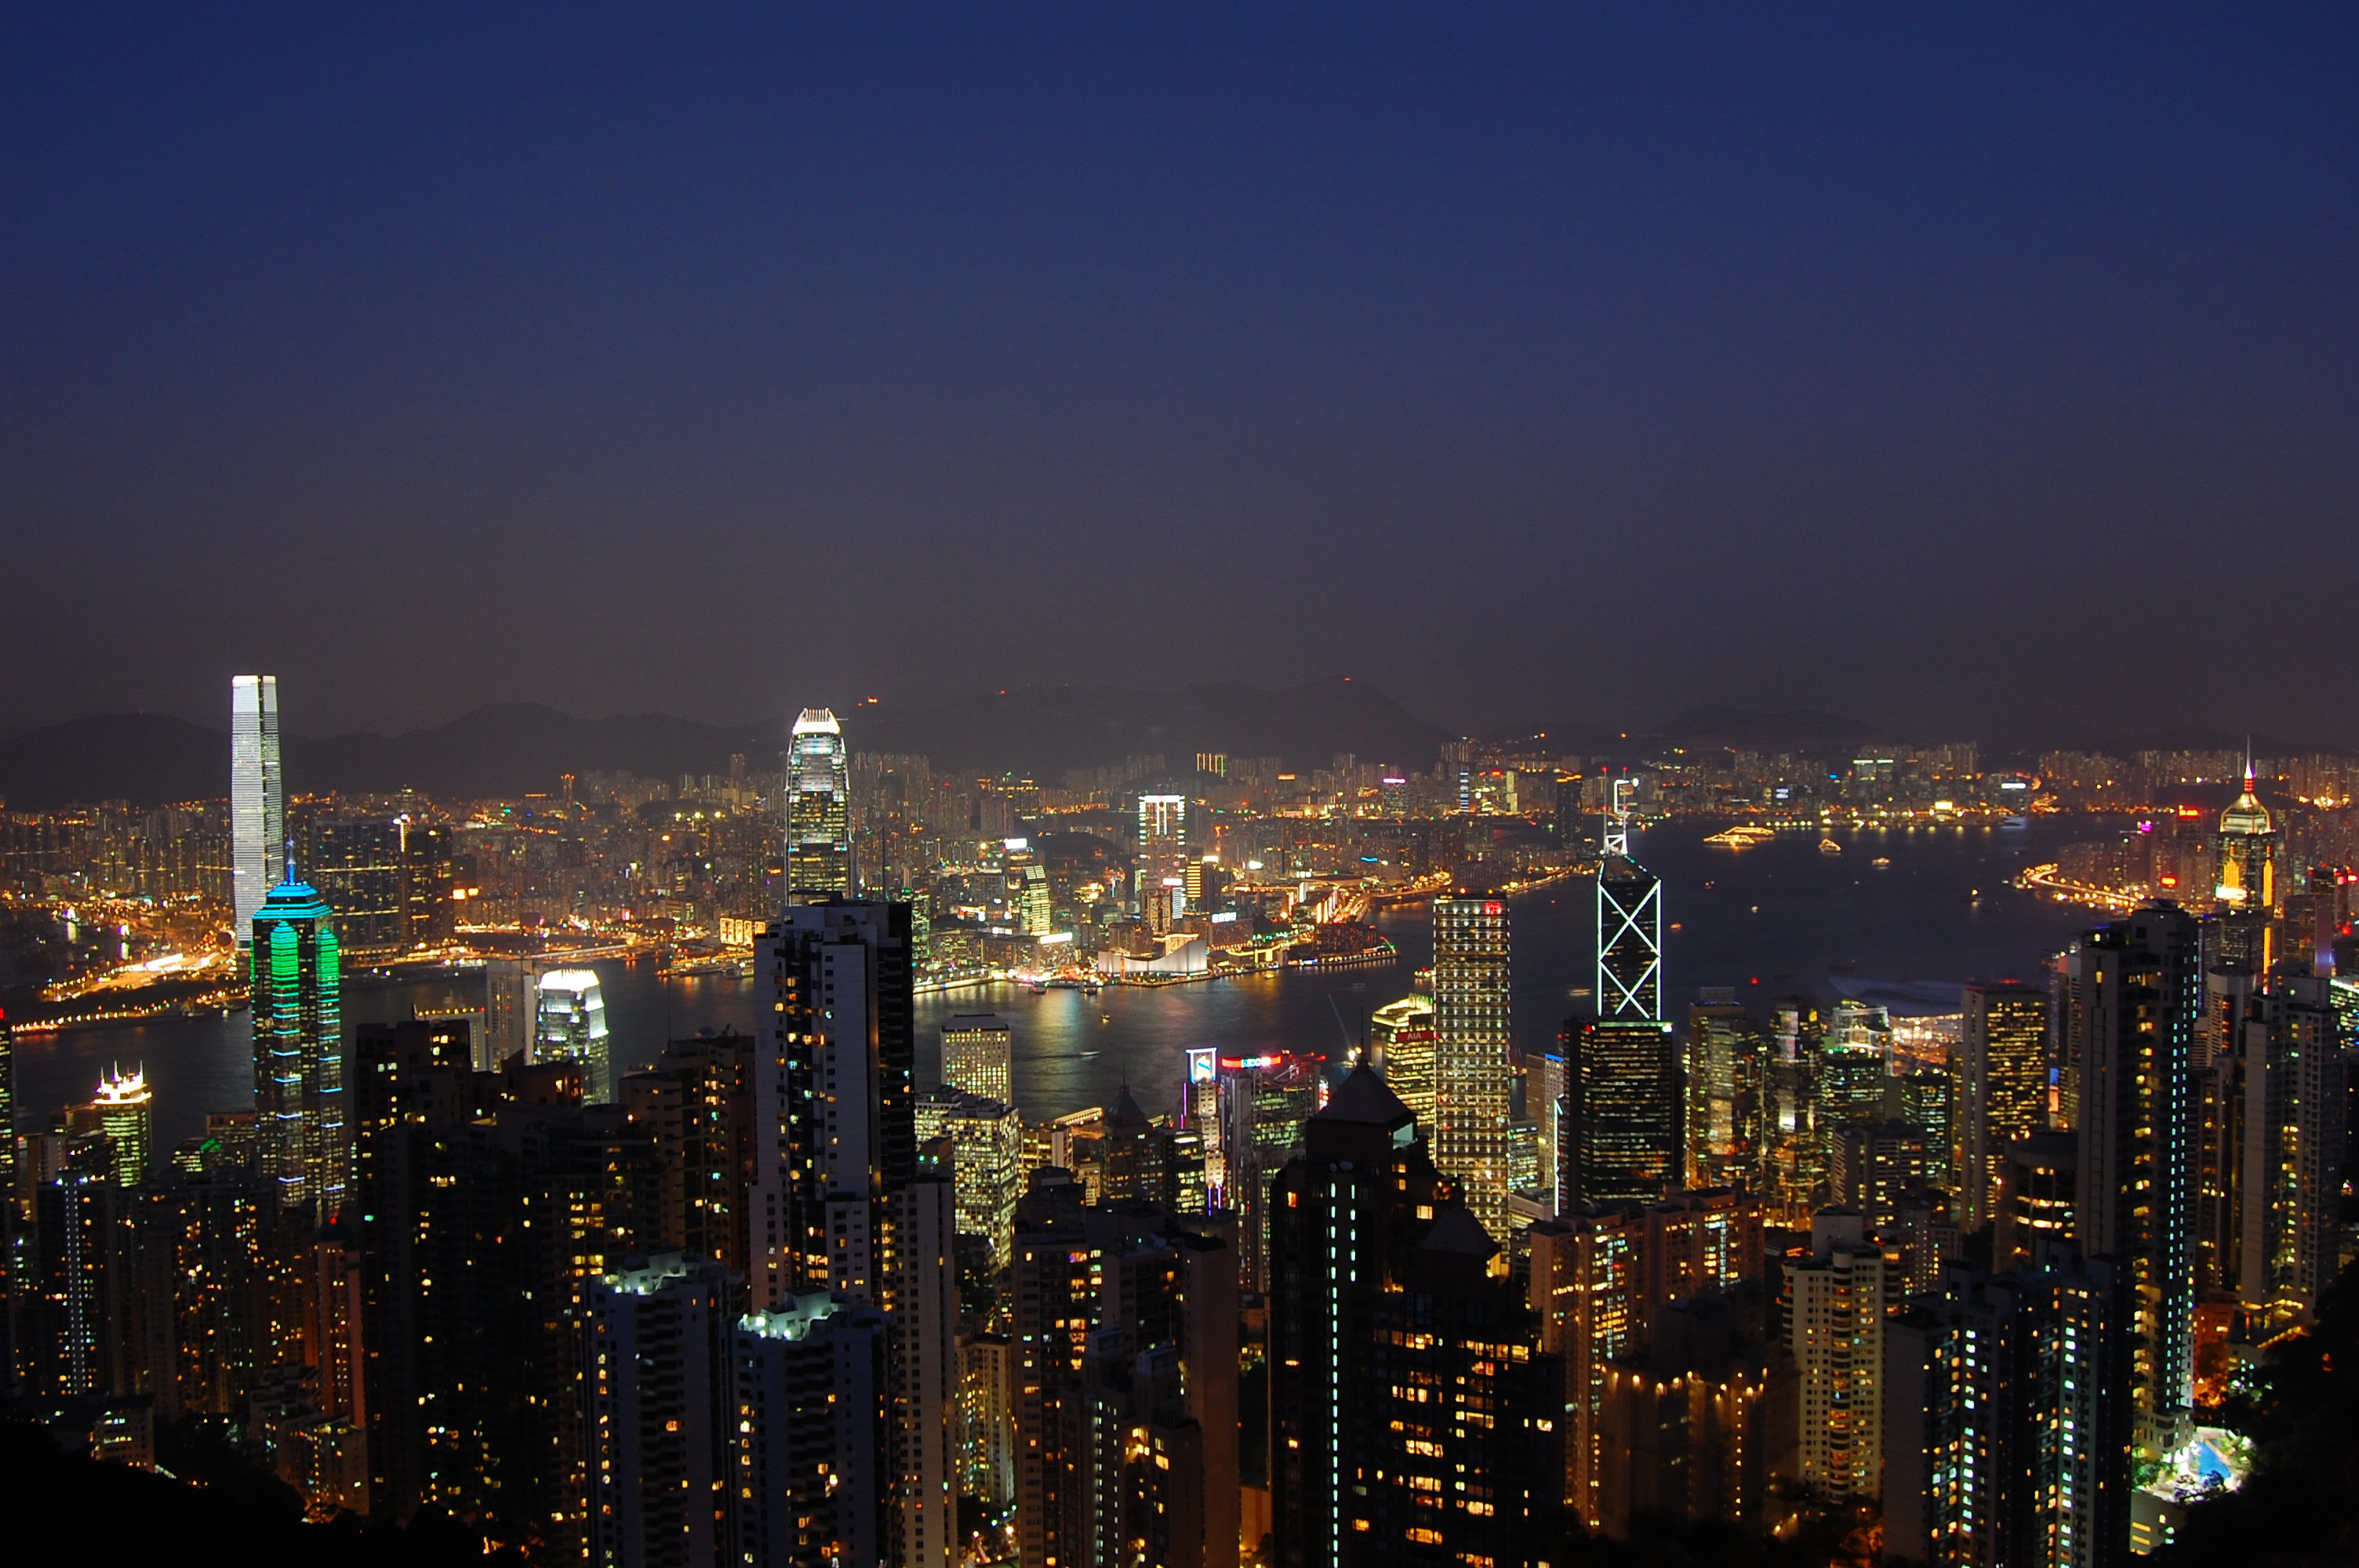 世界上摩天大楼最多的城市就在中国,你知道是哪个城市吗?